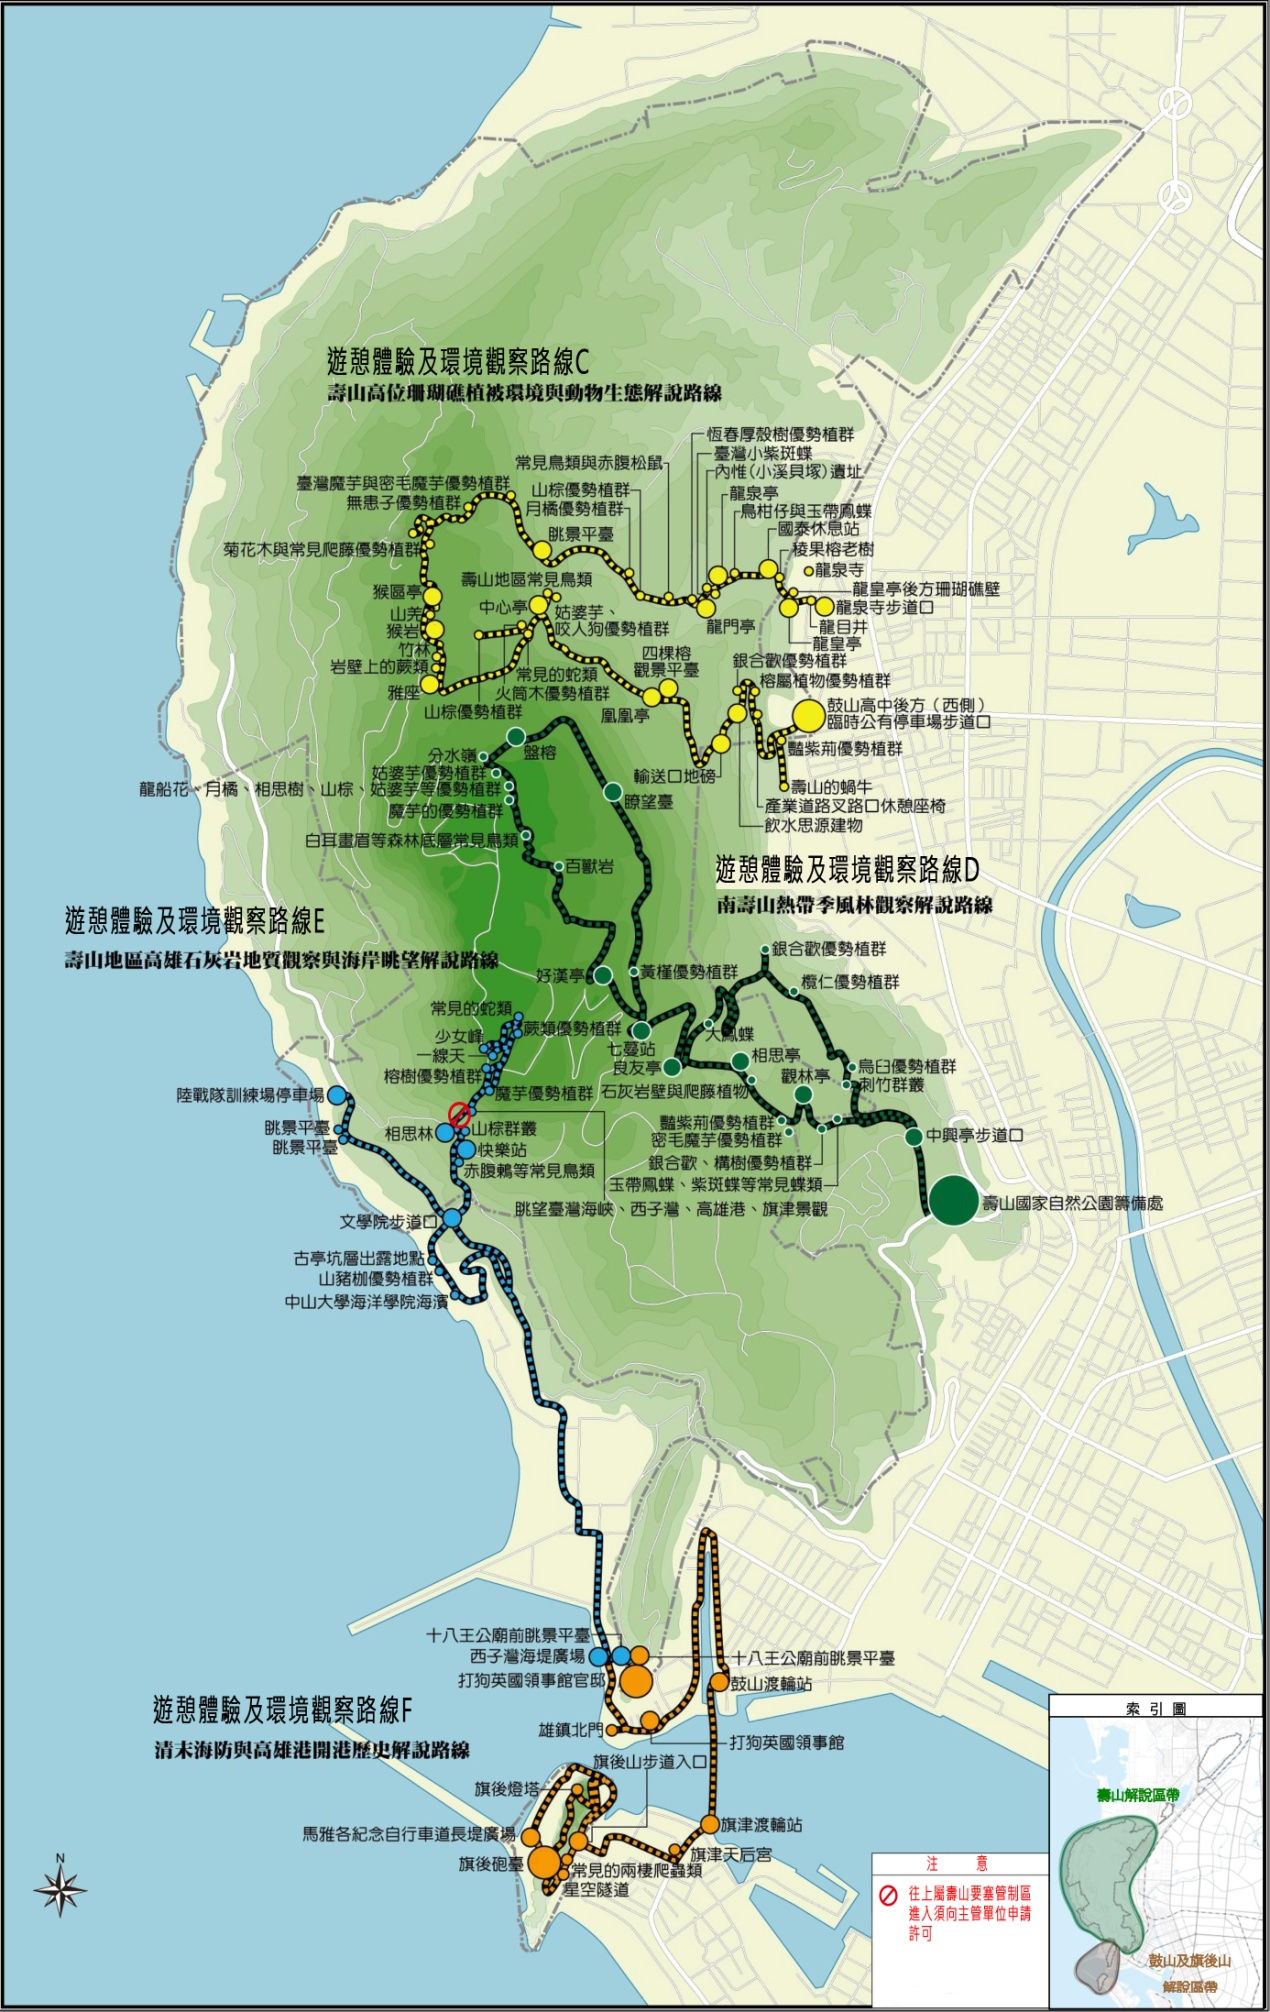 壽山地區及旗後山地區遊憩體驗及環境觀察路線示意圖-路線C